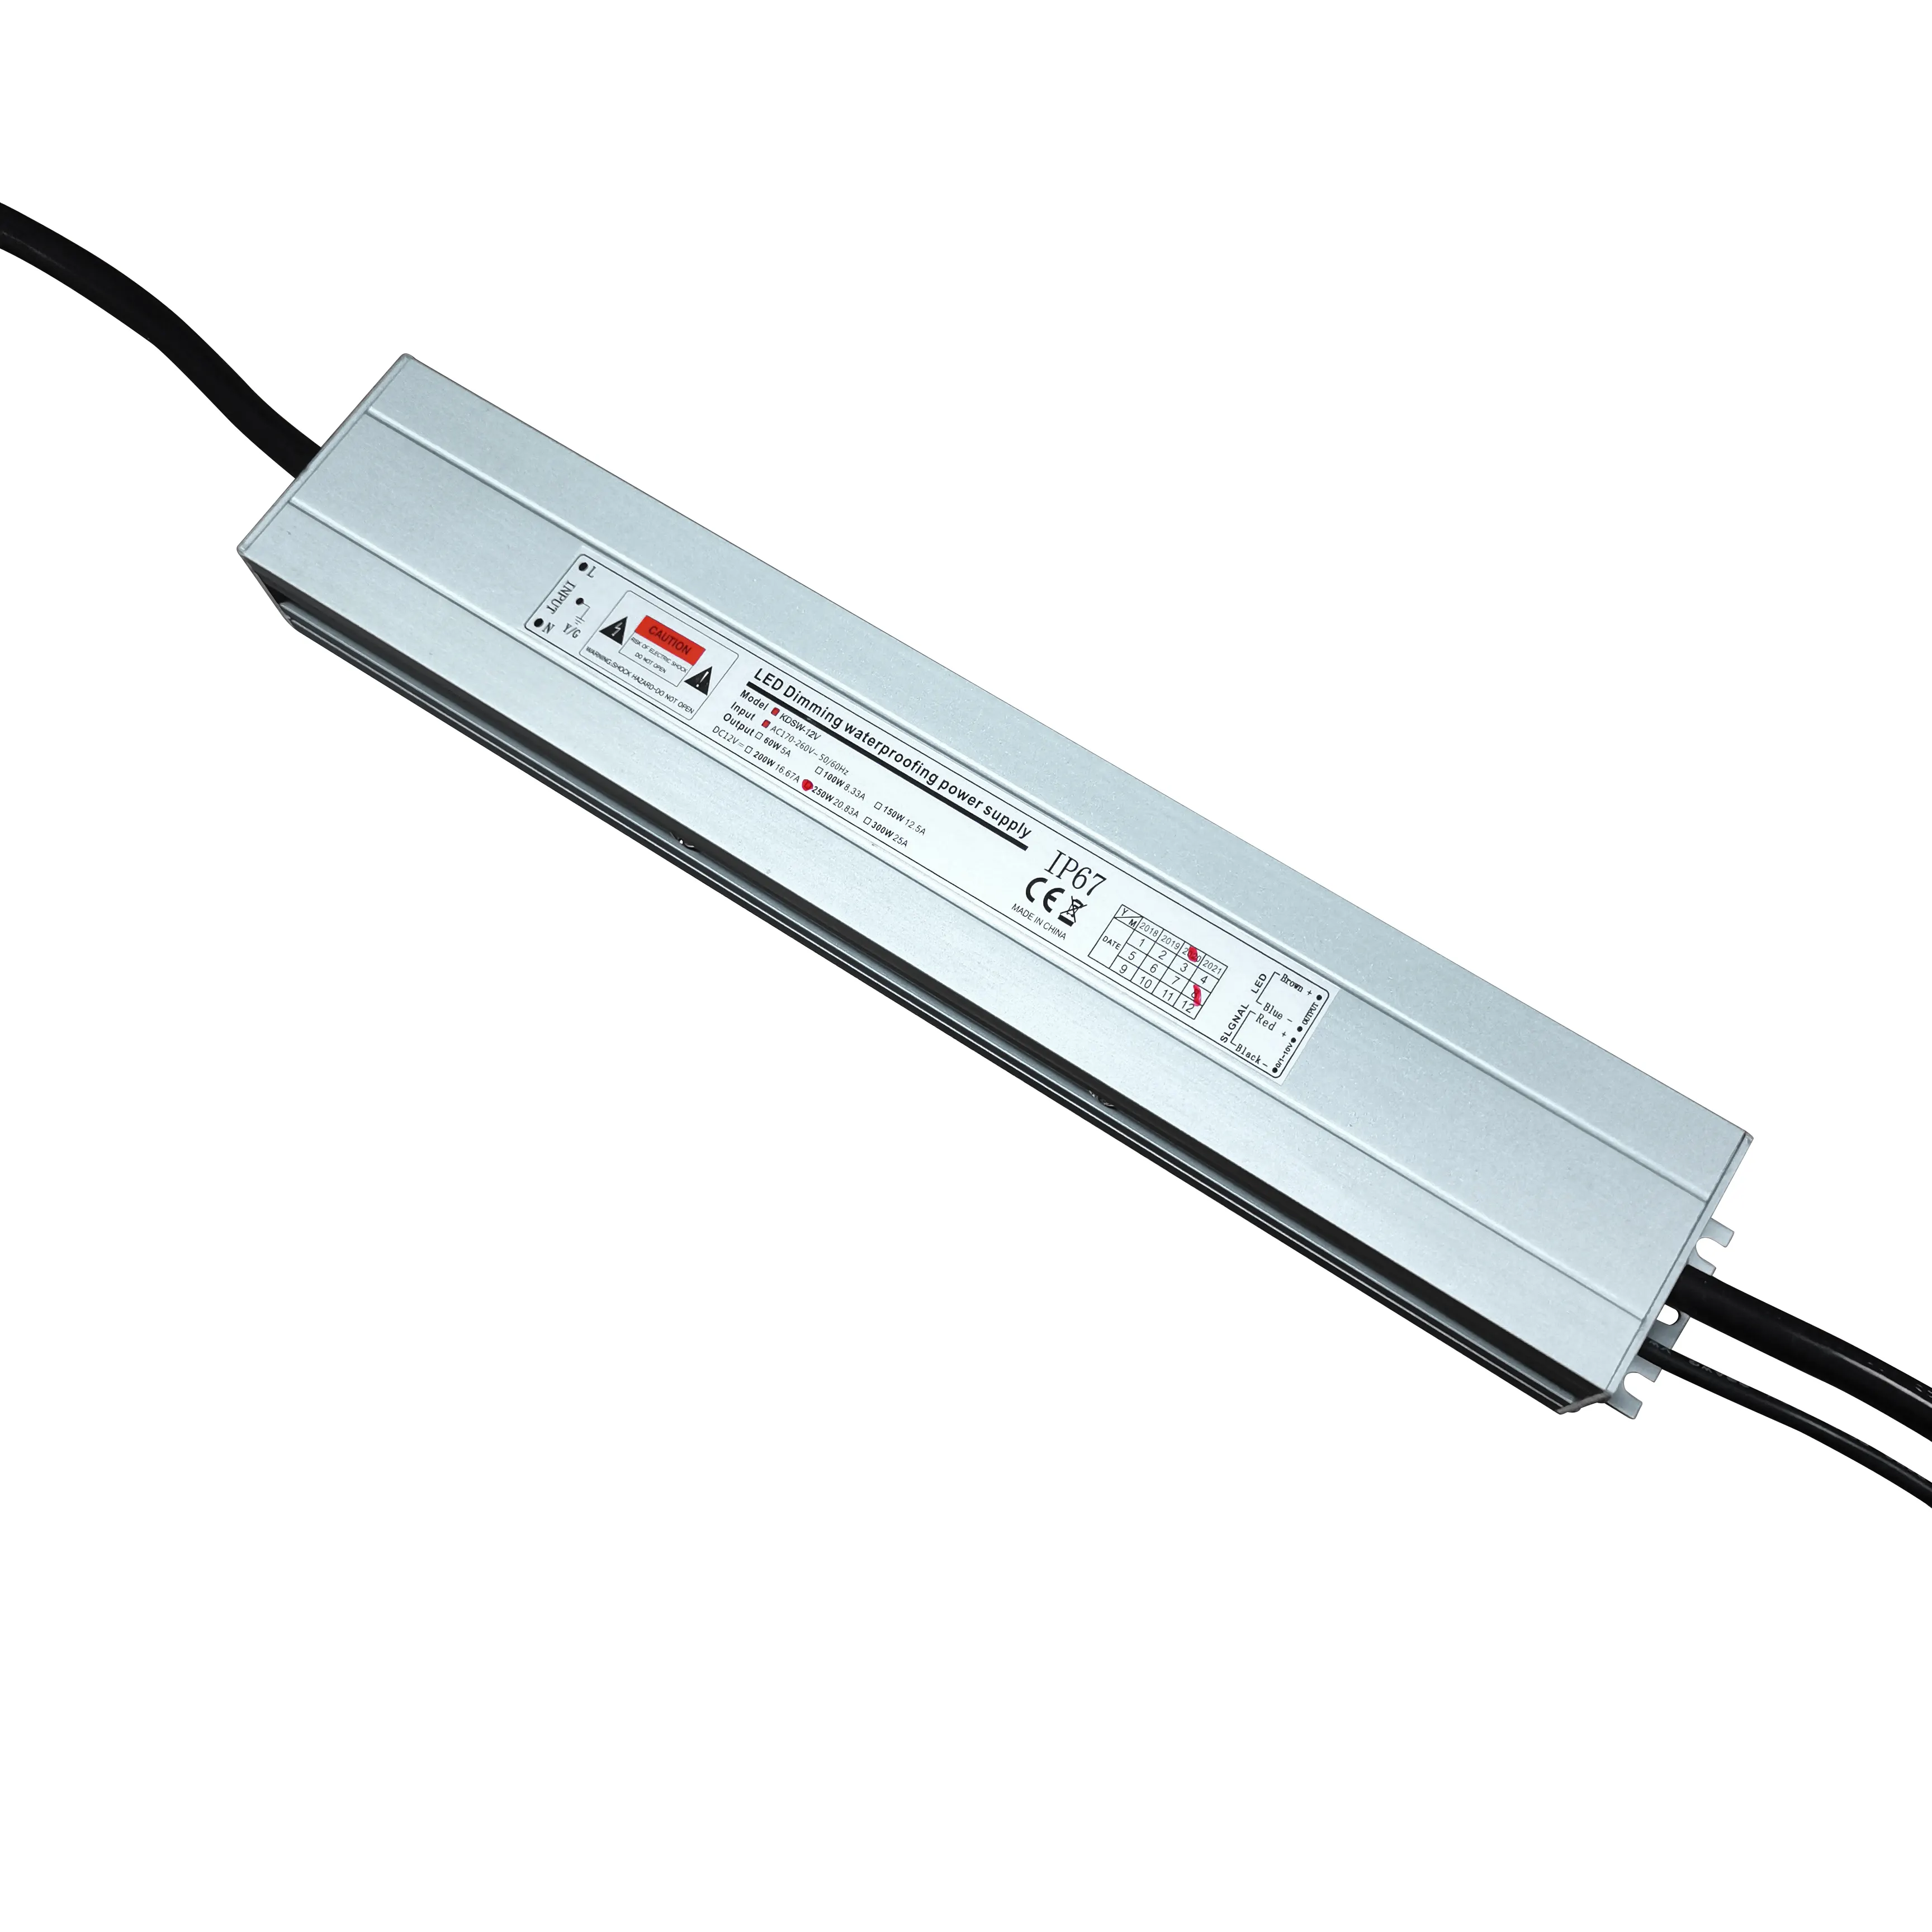 Kompatibel mit LED-Licht 2.0 Version Dali Dimming LED-Treiber 12V 24V 250W Triac 0-10V Dimm bares IP67-Netzteil